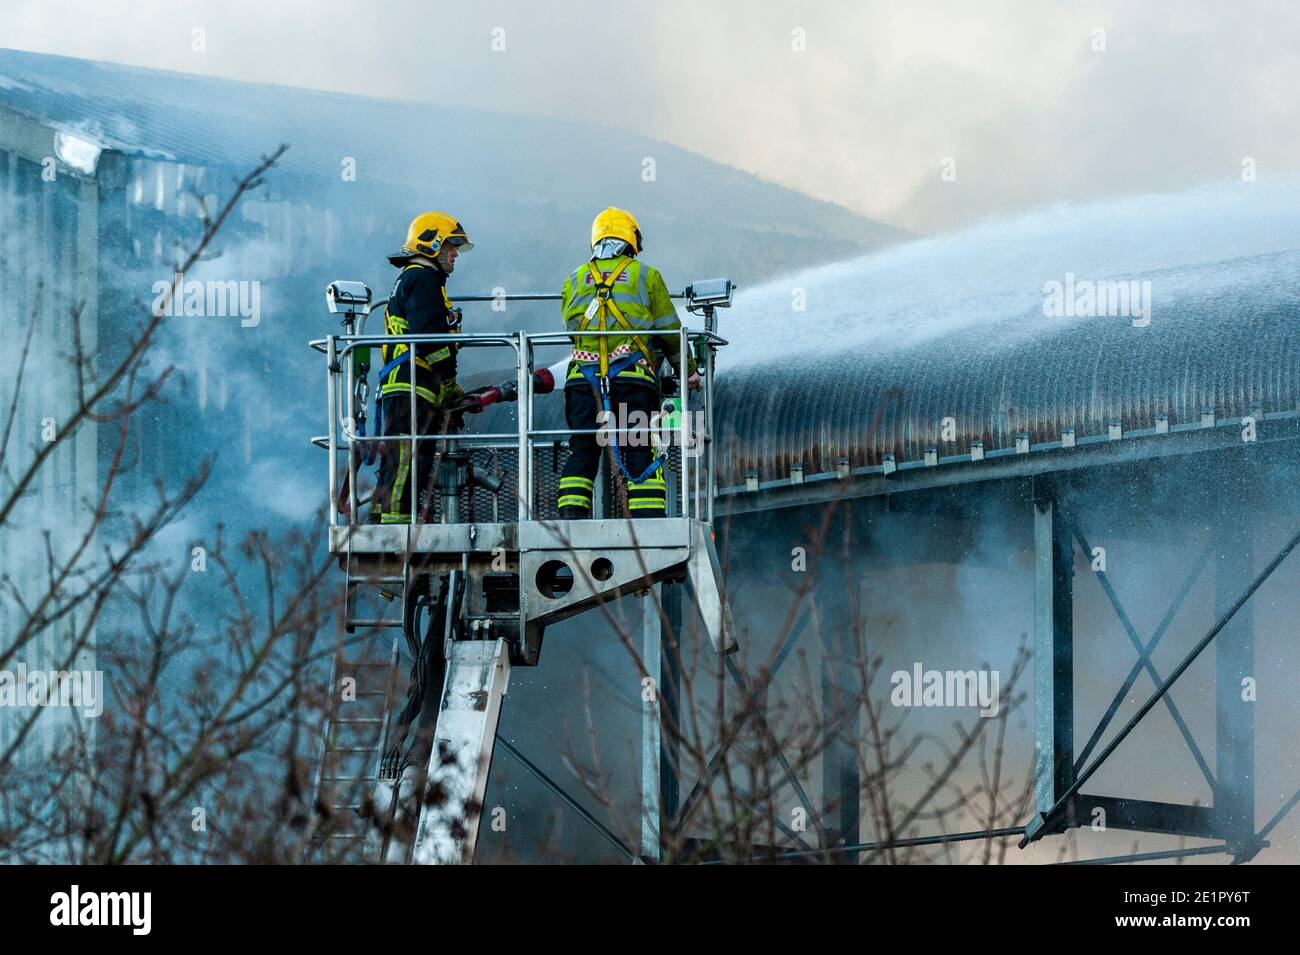 Ringaskiddy, Cork, Irlanda. 9 gennaio 2021. Ringaskiddy, un grande incendio nel porto di Cork, è stato messo sotto controllo. Si ritiene che l'incendio sia iniziato in un impianto di alimentazione degli animali presso la R&H Hall. Non sono state segnalate lesioni. Il porto è stato evacuato. Credit: AG News/Alamy Live News Foto Stock